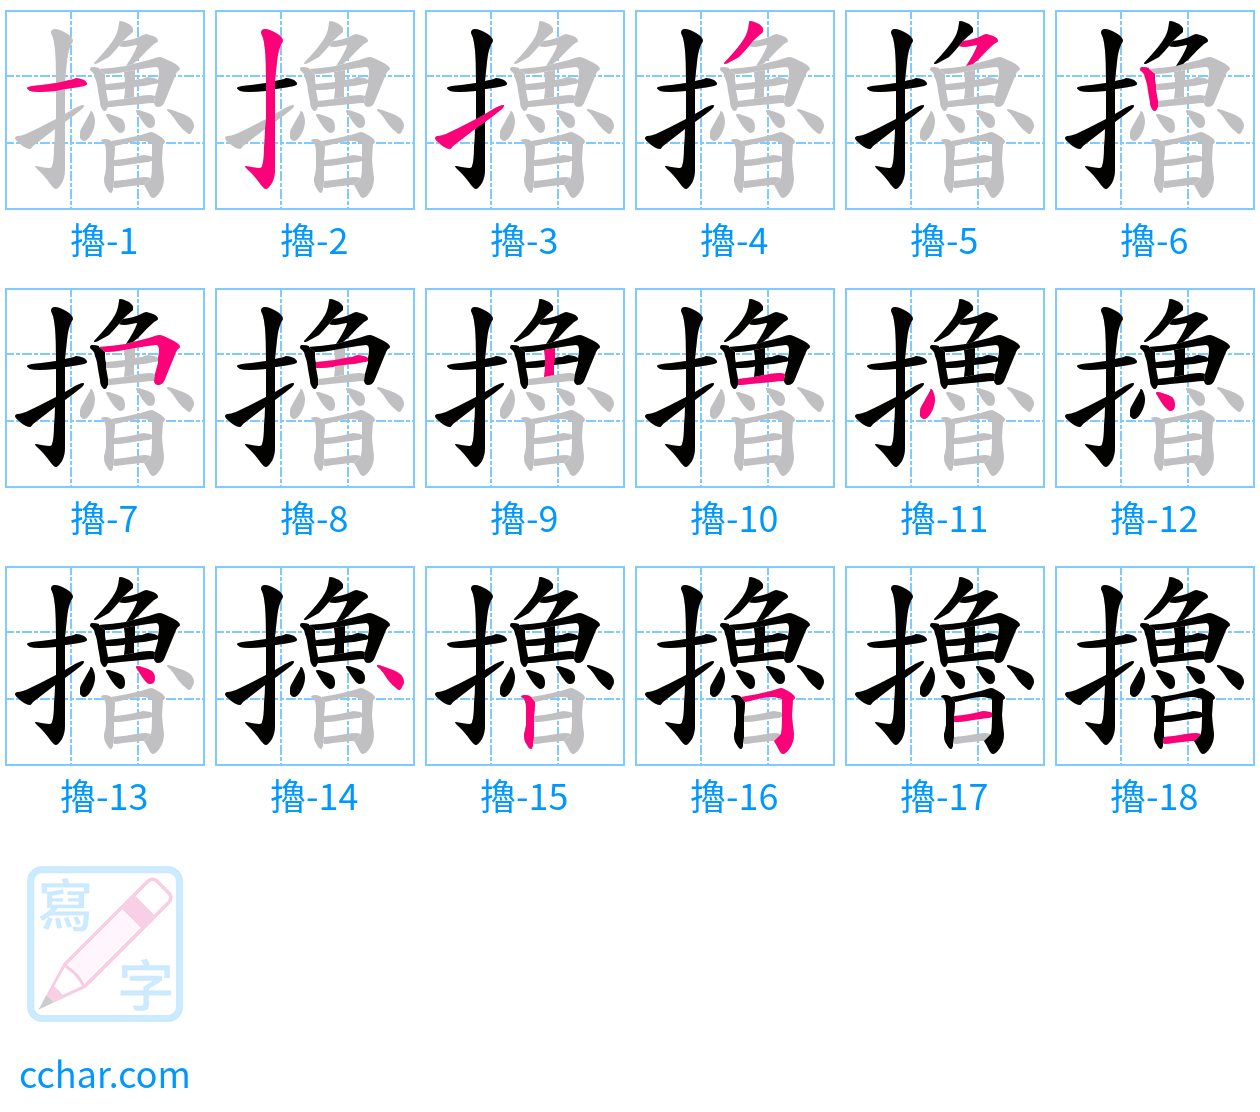 擼 stroke order step-by-step diagram